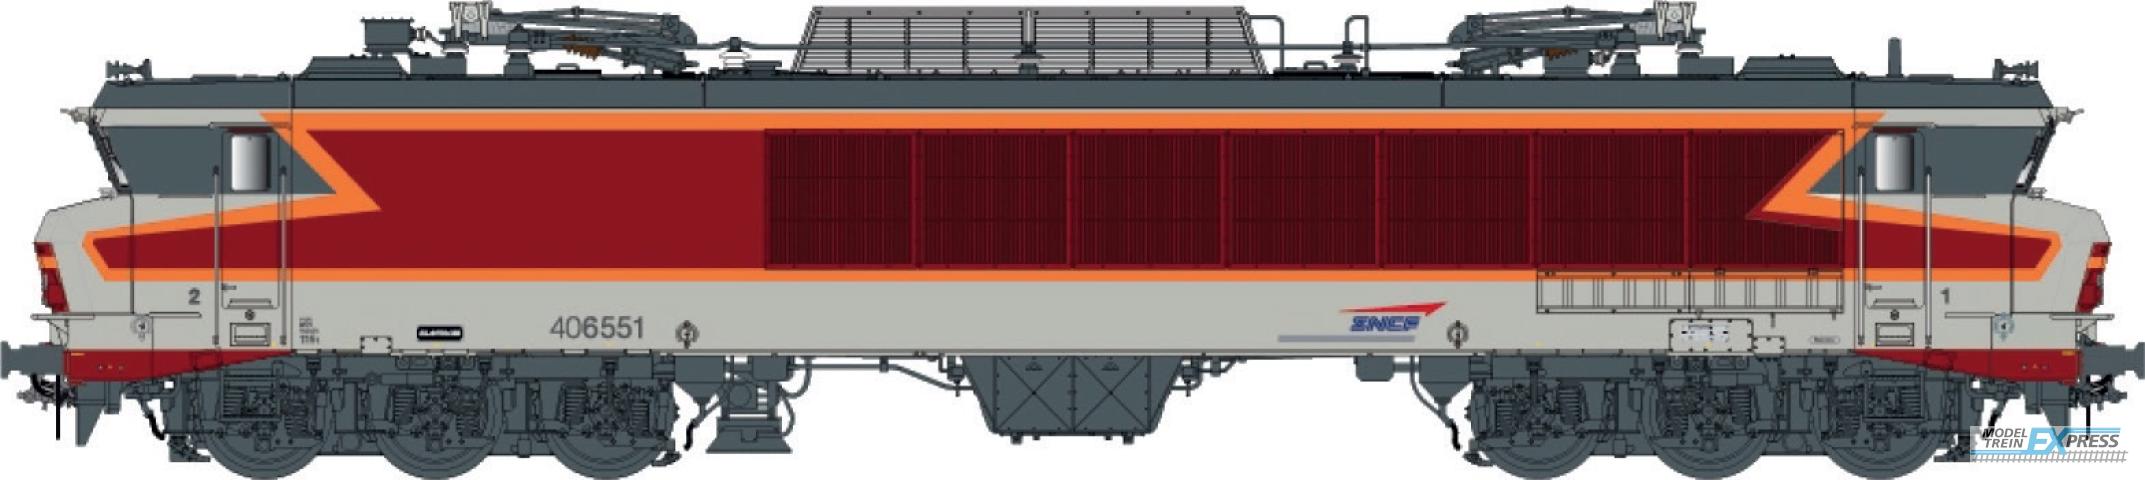 LS Models 10318 CC 6551, grey/red/orange, livery ARZENS, logo cap,Vénissieux depot  /  Ep. V  /  SNCF  /  HO  /  DC  /  1 P.